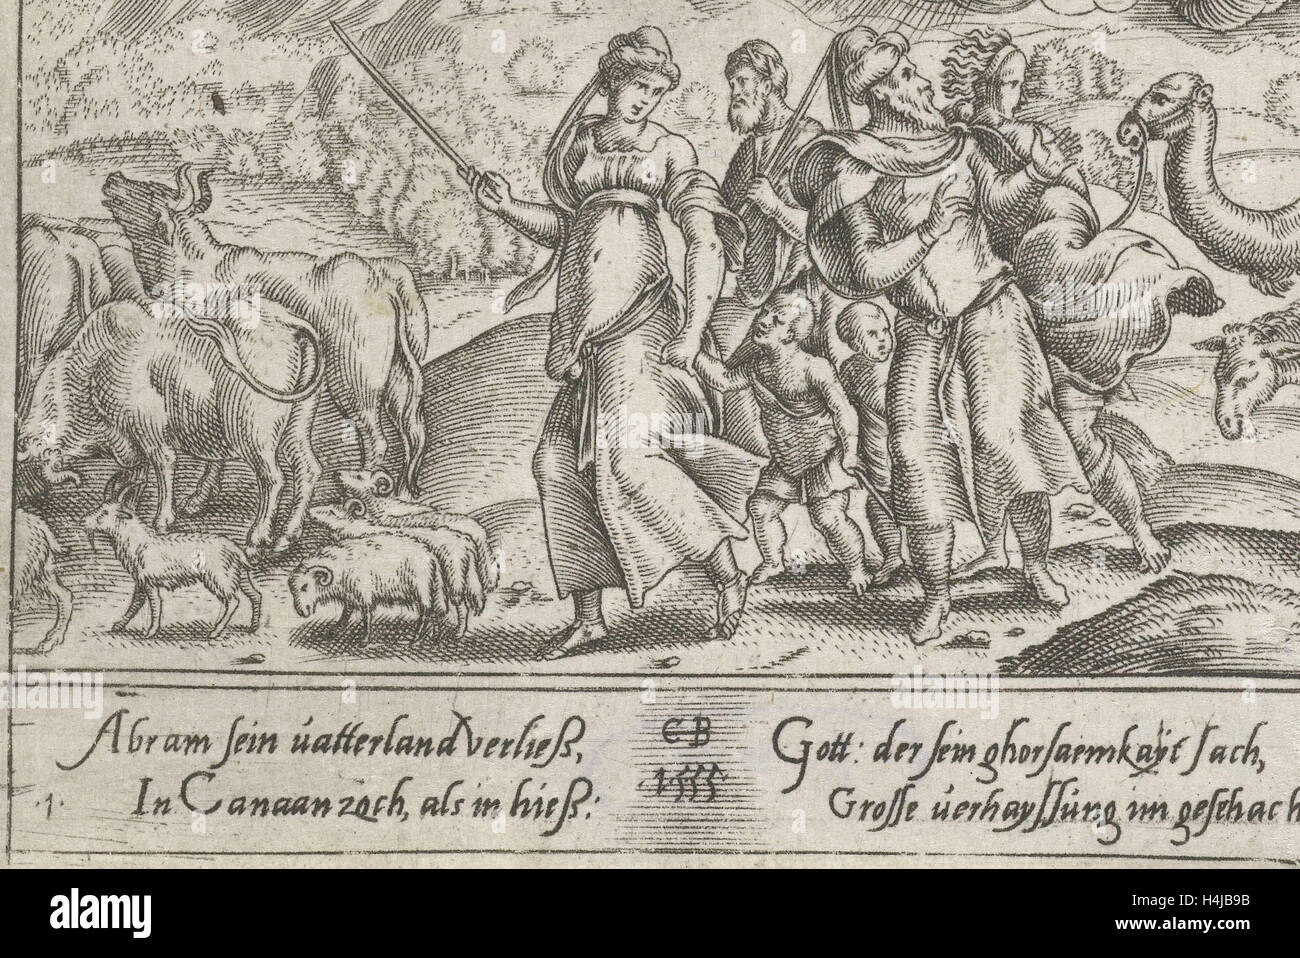 Abraham va à Canaan, imprimer bouilloire : Cornelis Bos, 1555 Banque D'Images